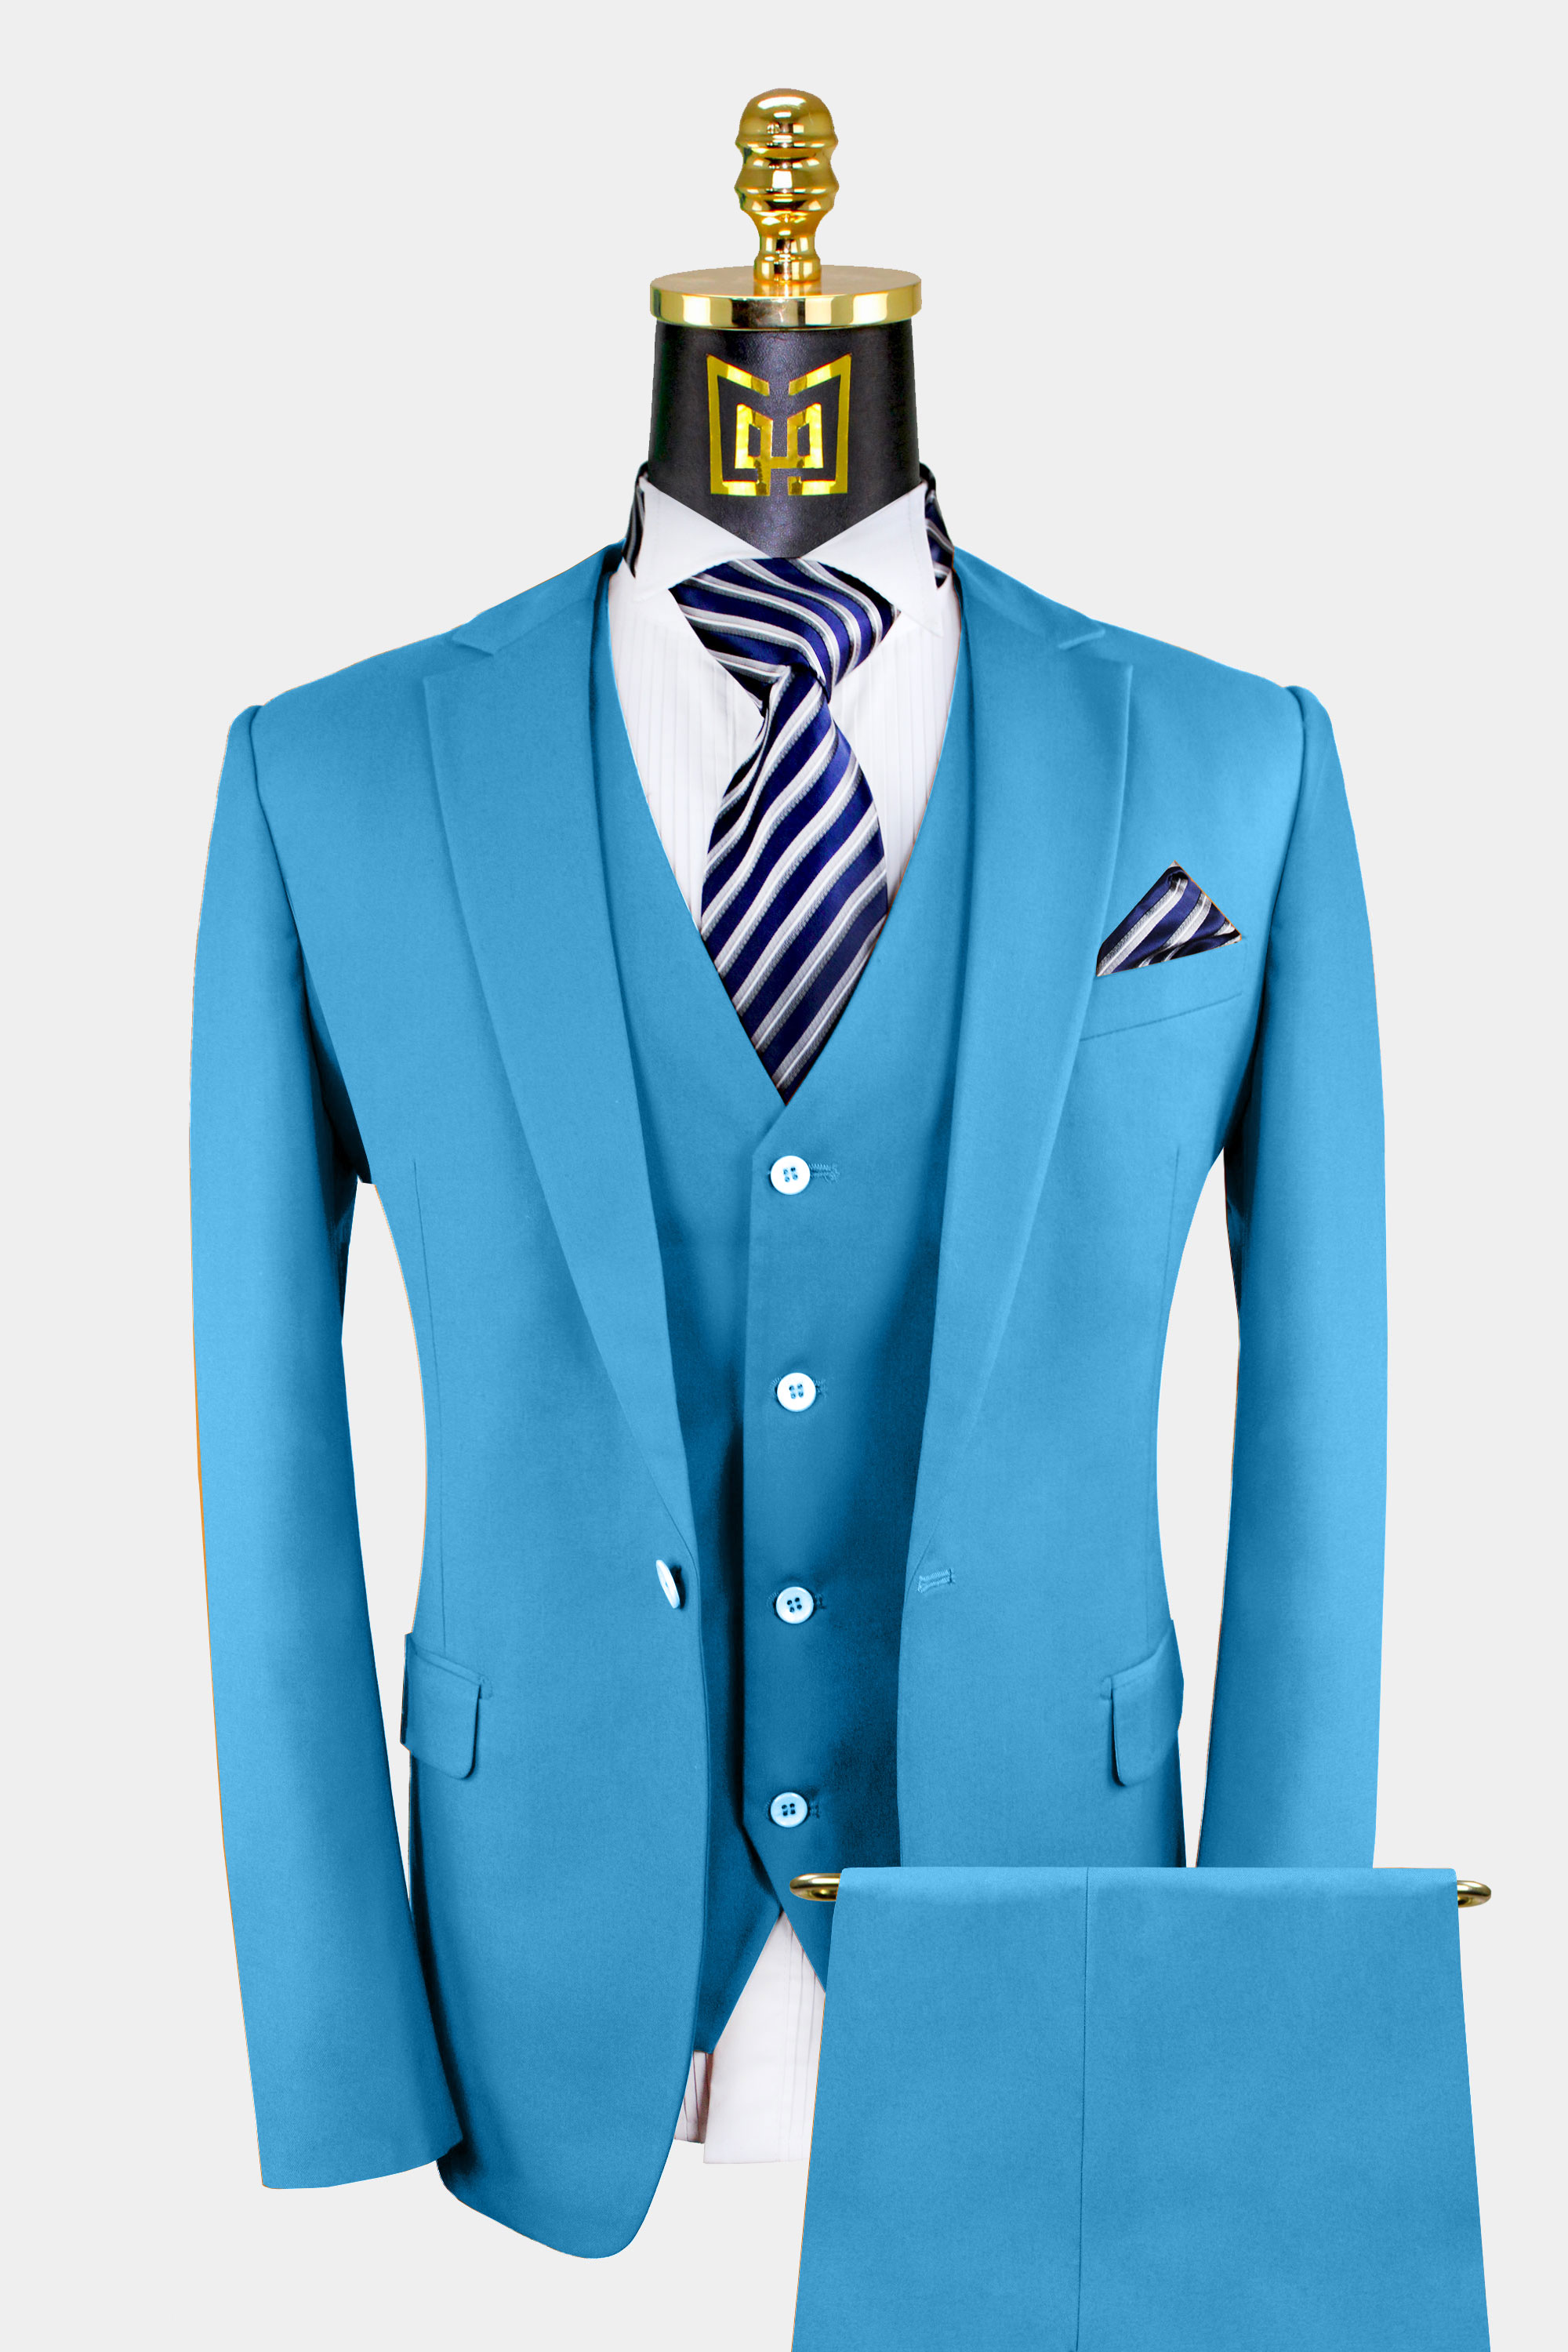 Classic Cerulean Light Blue Suit – 3 Piece